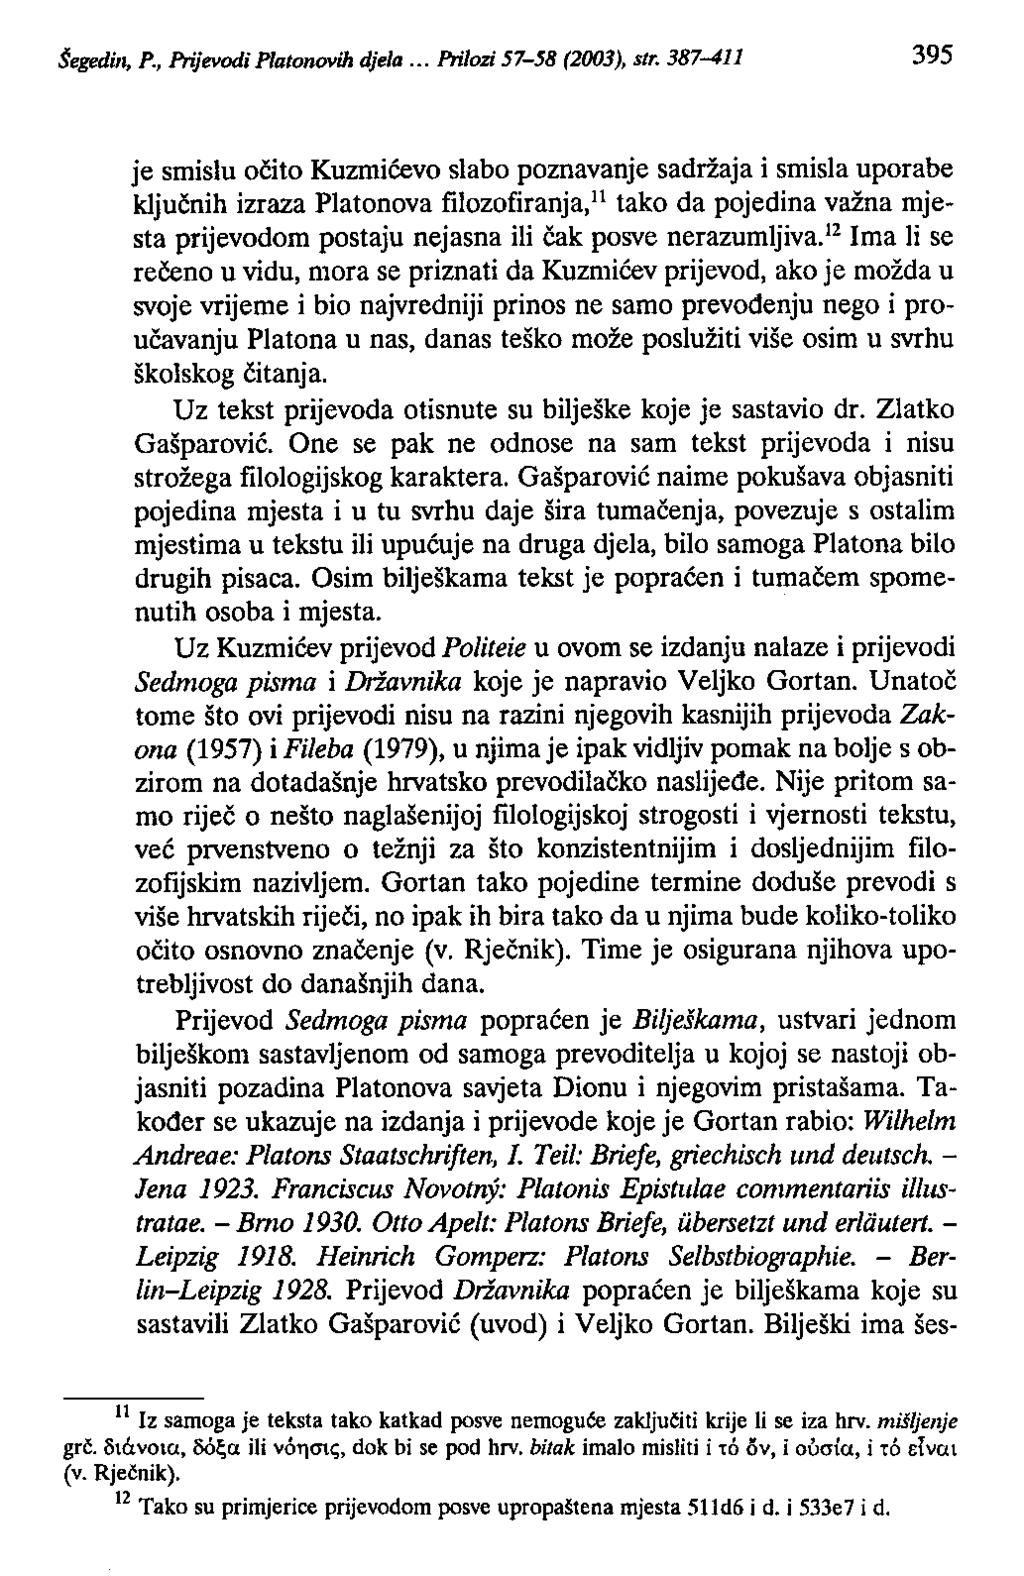 Šegedb~ P., Prijevodi Plato_ih djela... Prilozi 57-58 (2003), str.